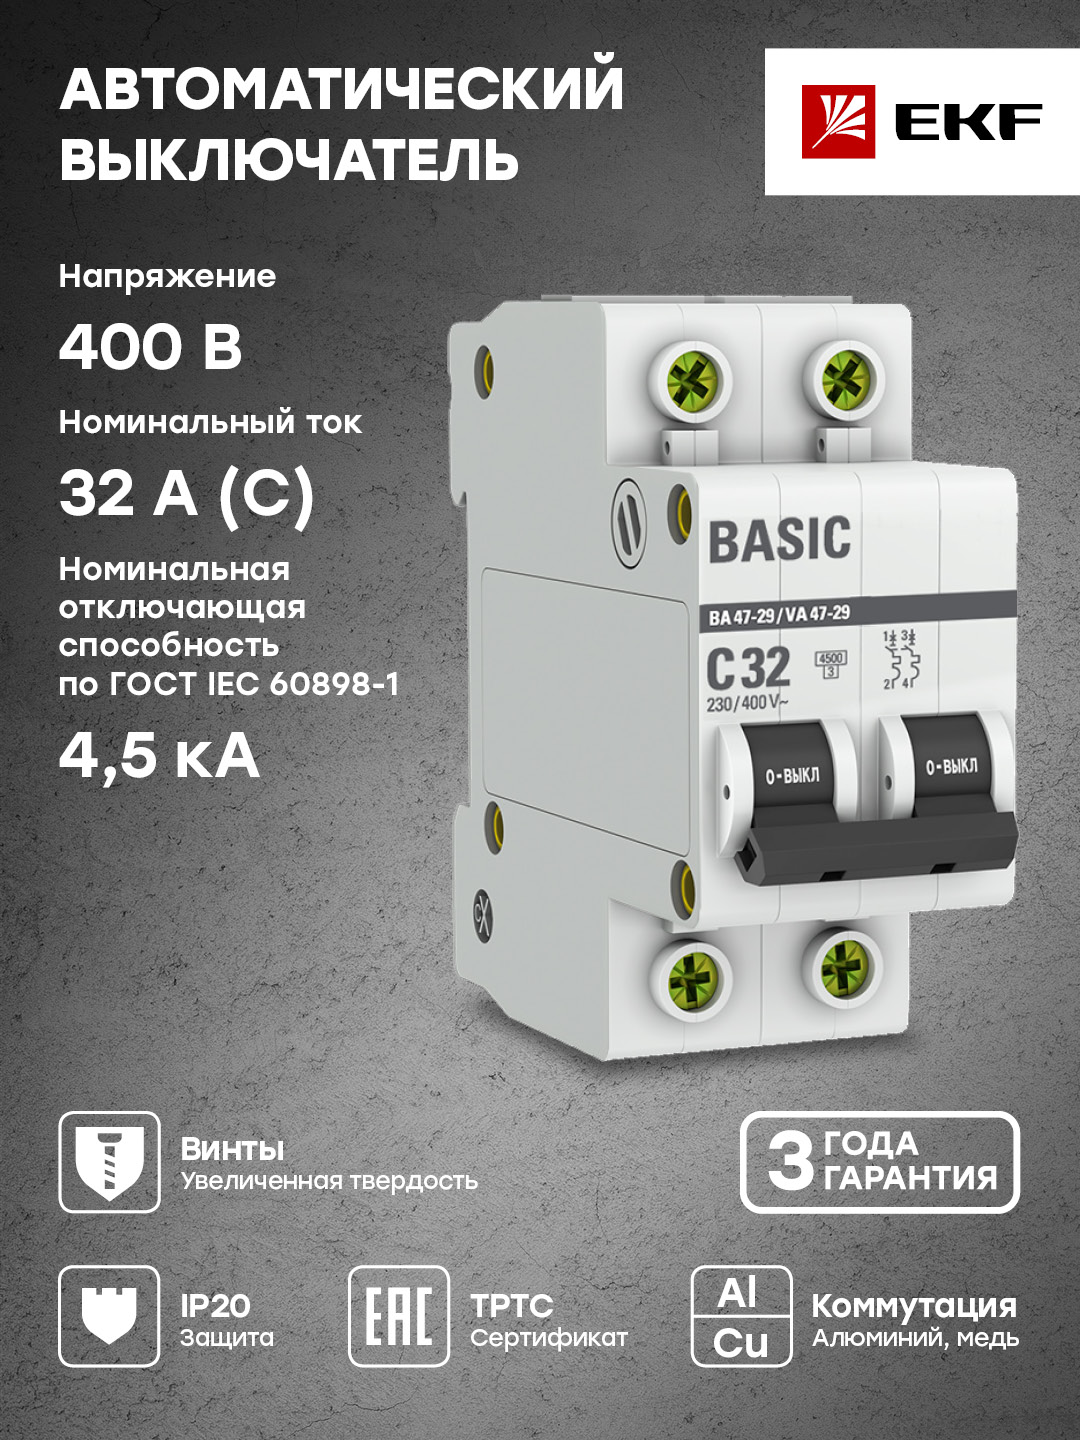 Автоматический выключатель EKF Basic 2P 32А (C) 4,5кА ВА 47-29 mcb4729-2-32C - купить в Москве, цены на Мегамаркет